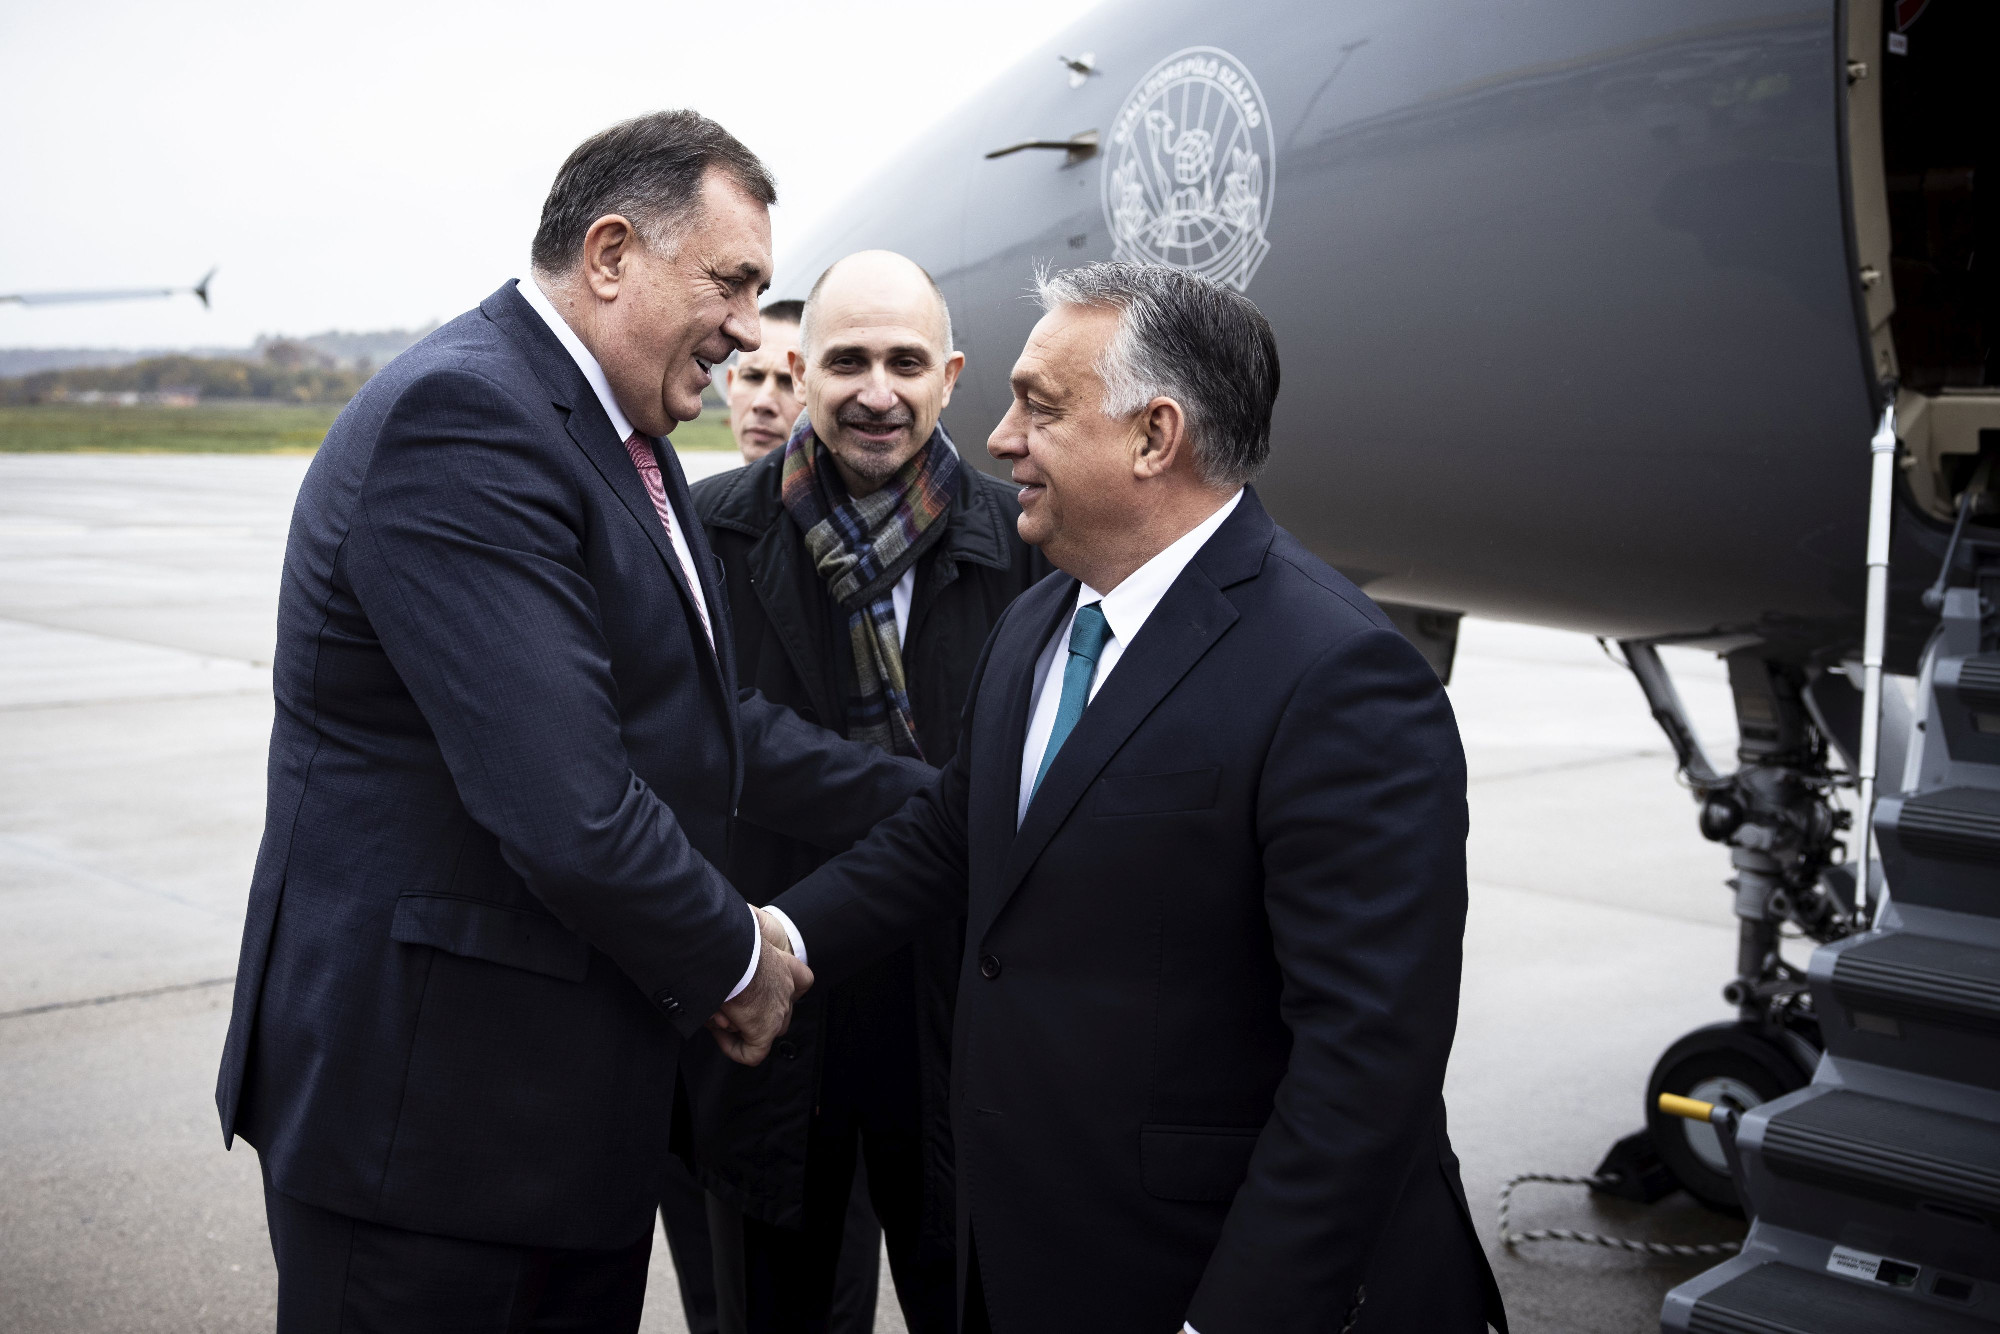 Vádat emelt az ügyészség Orbán Viktor bosznai szerb szövetségesével szemben